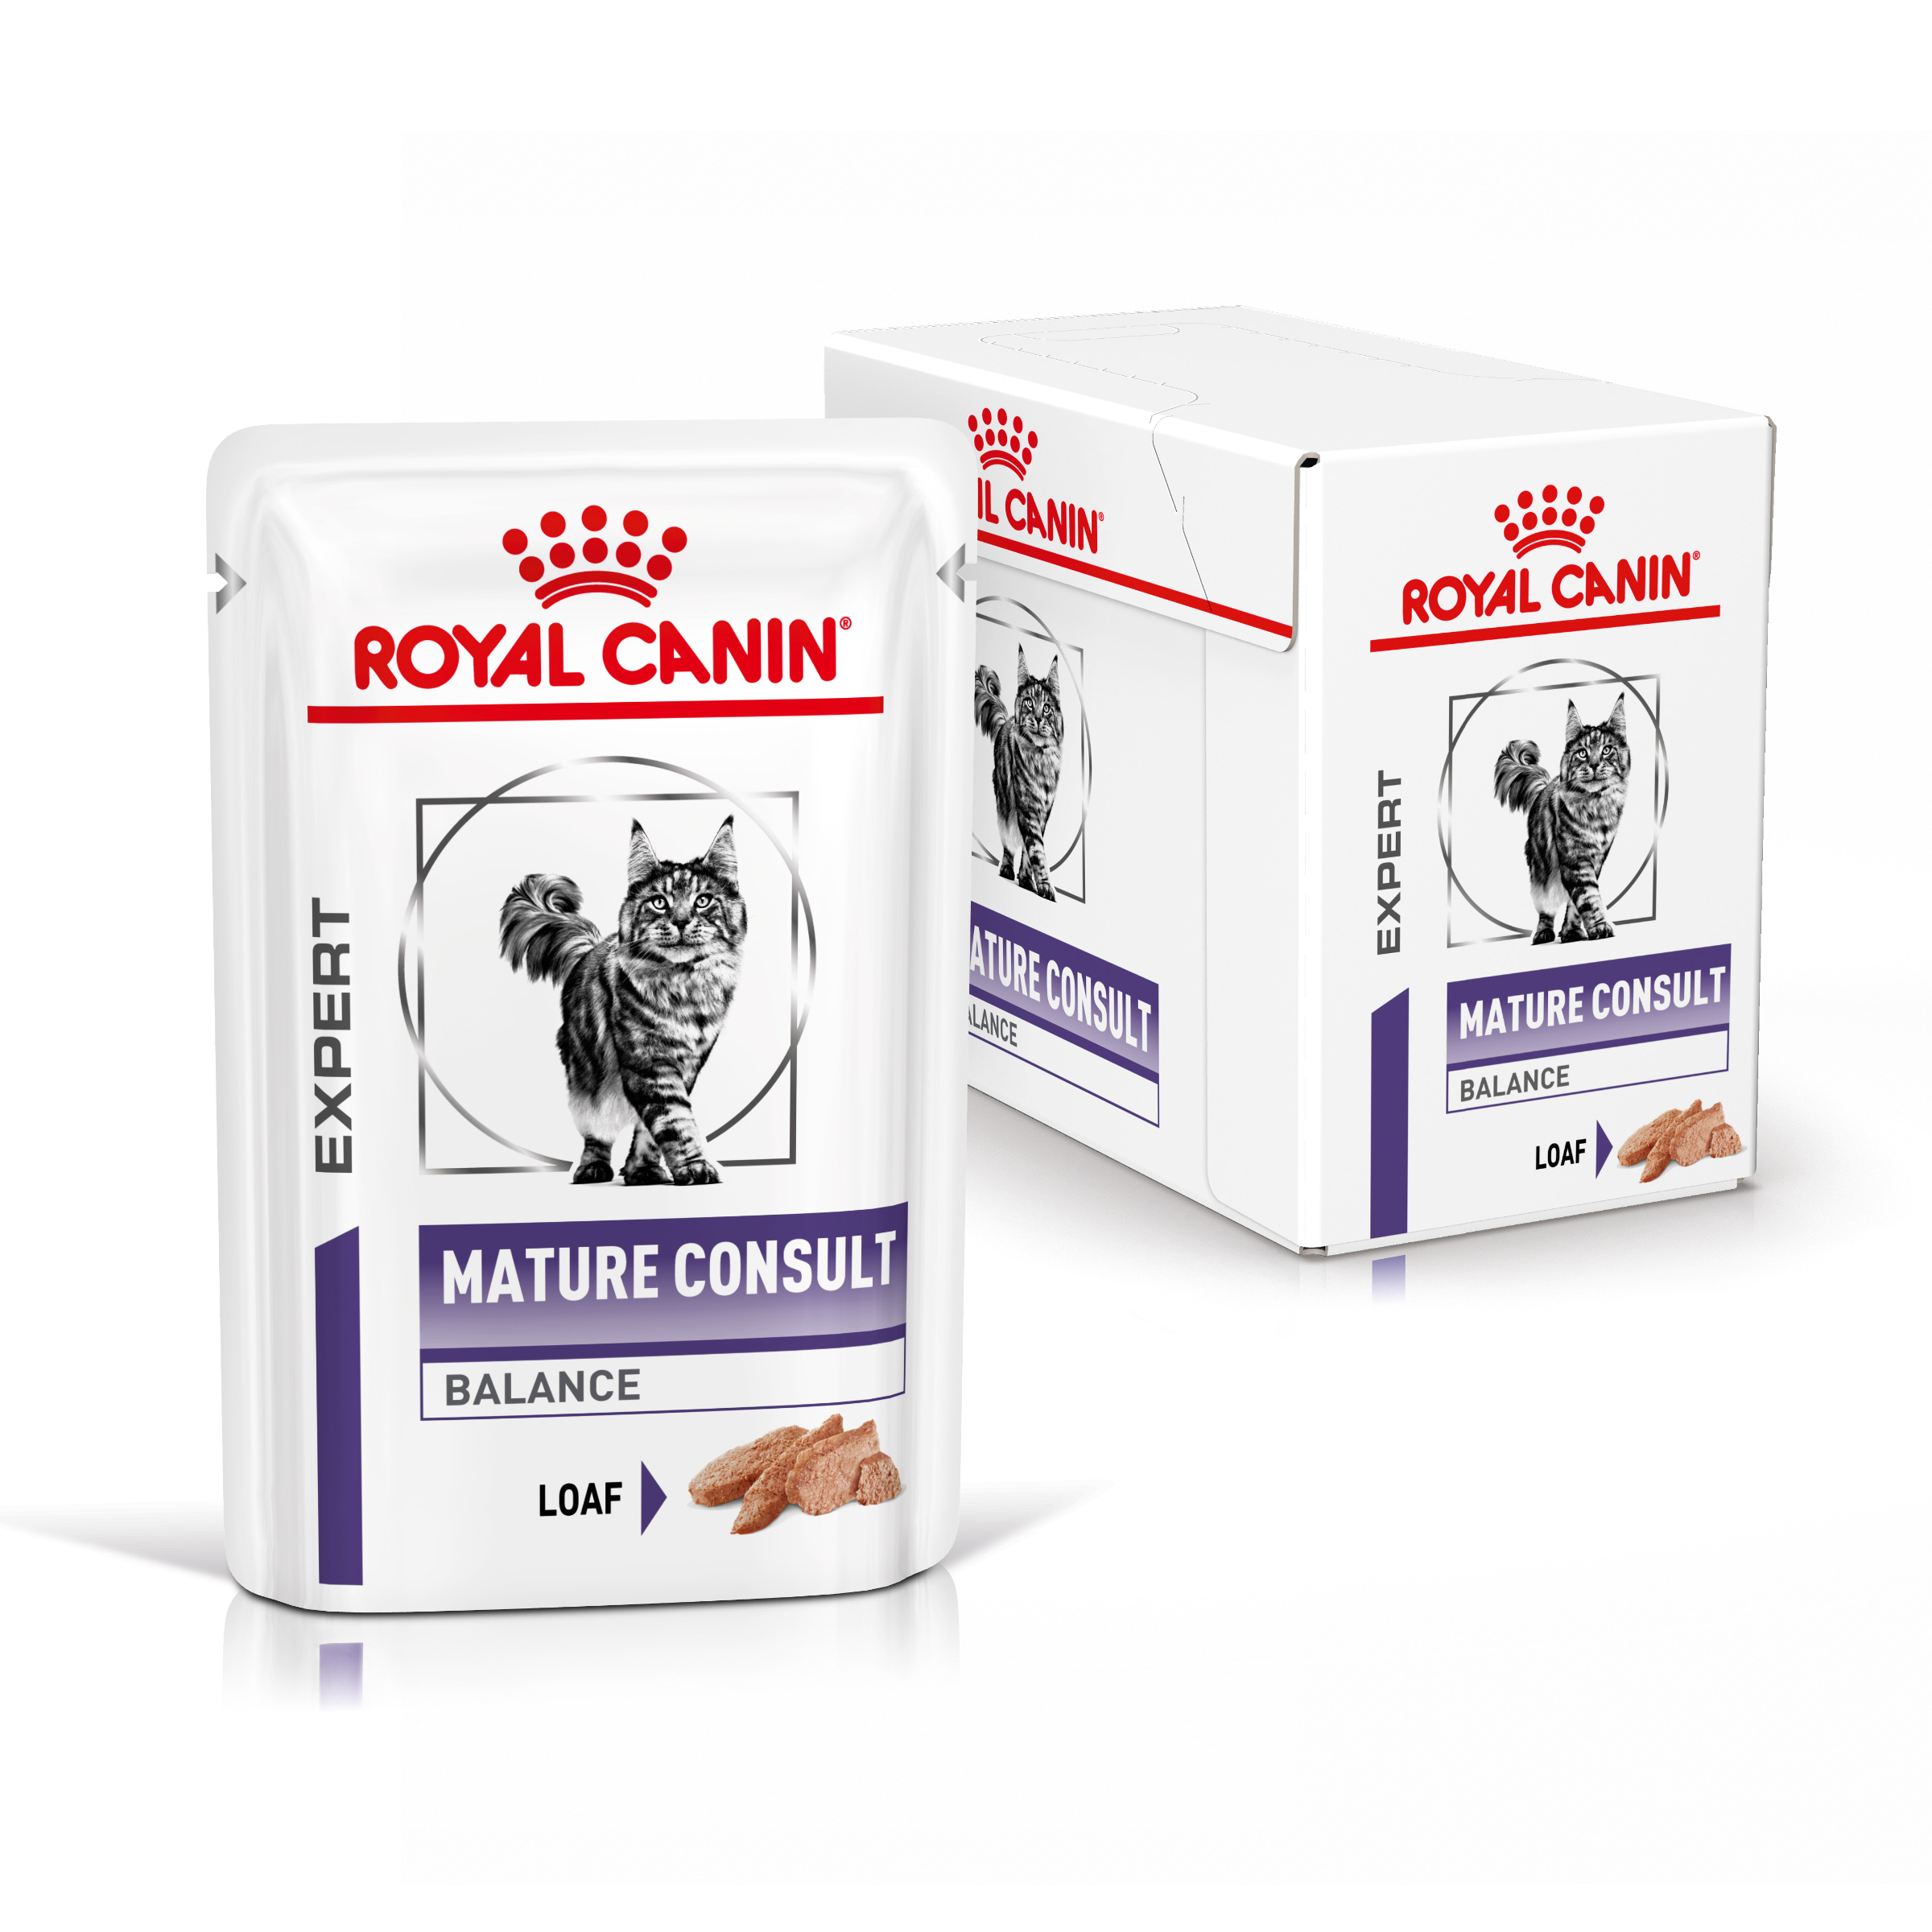 Sachets Kitten en Mousse pour Chaton - Royal Canin - 12x85g